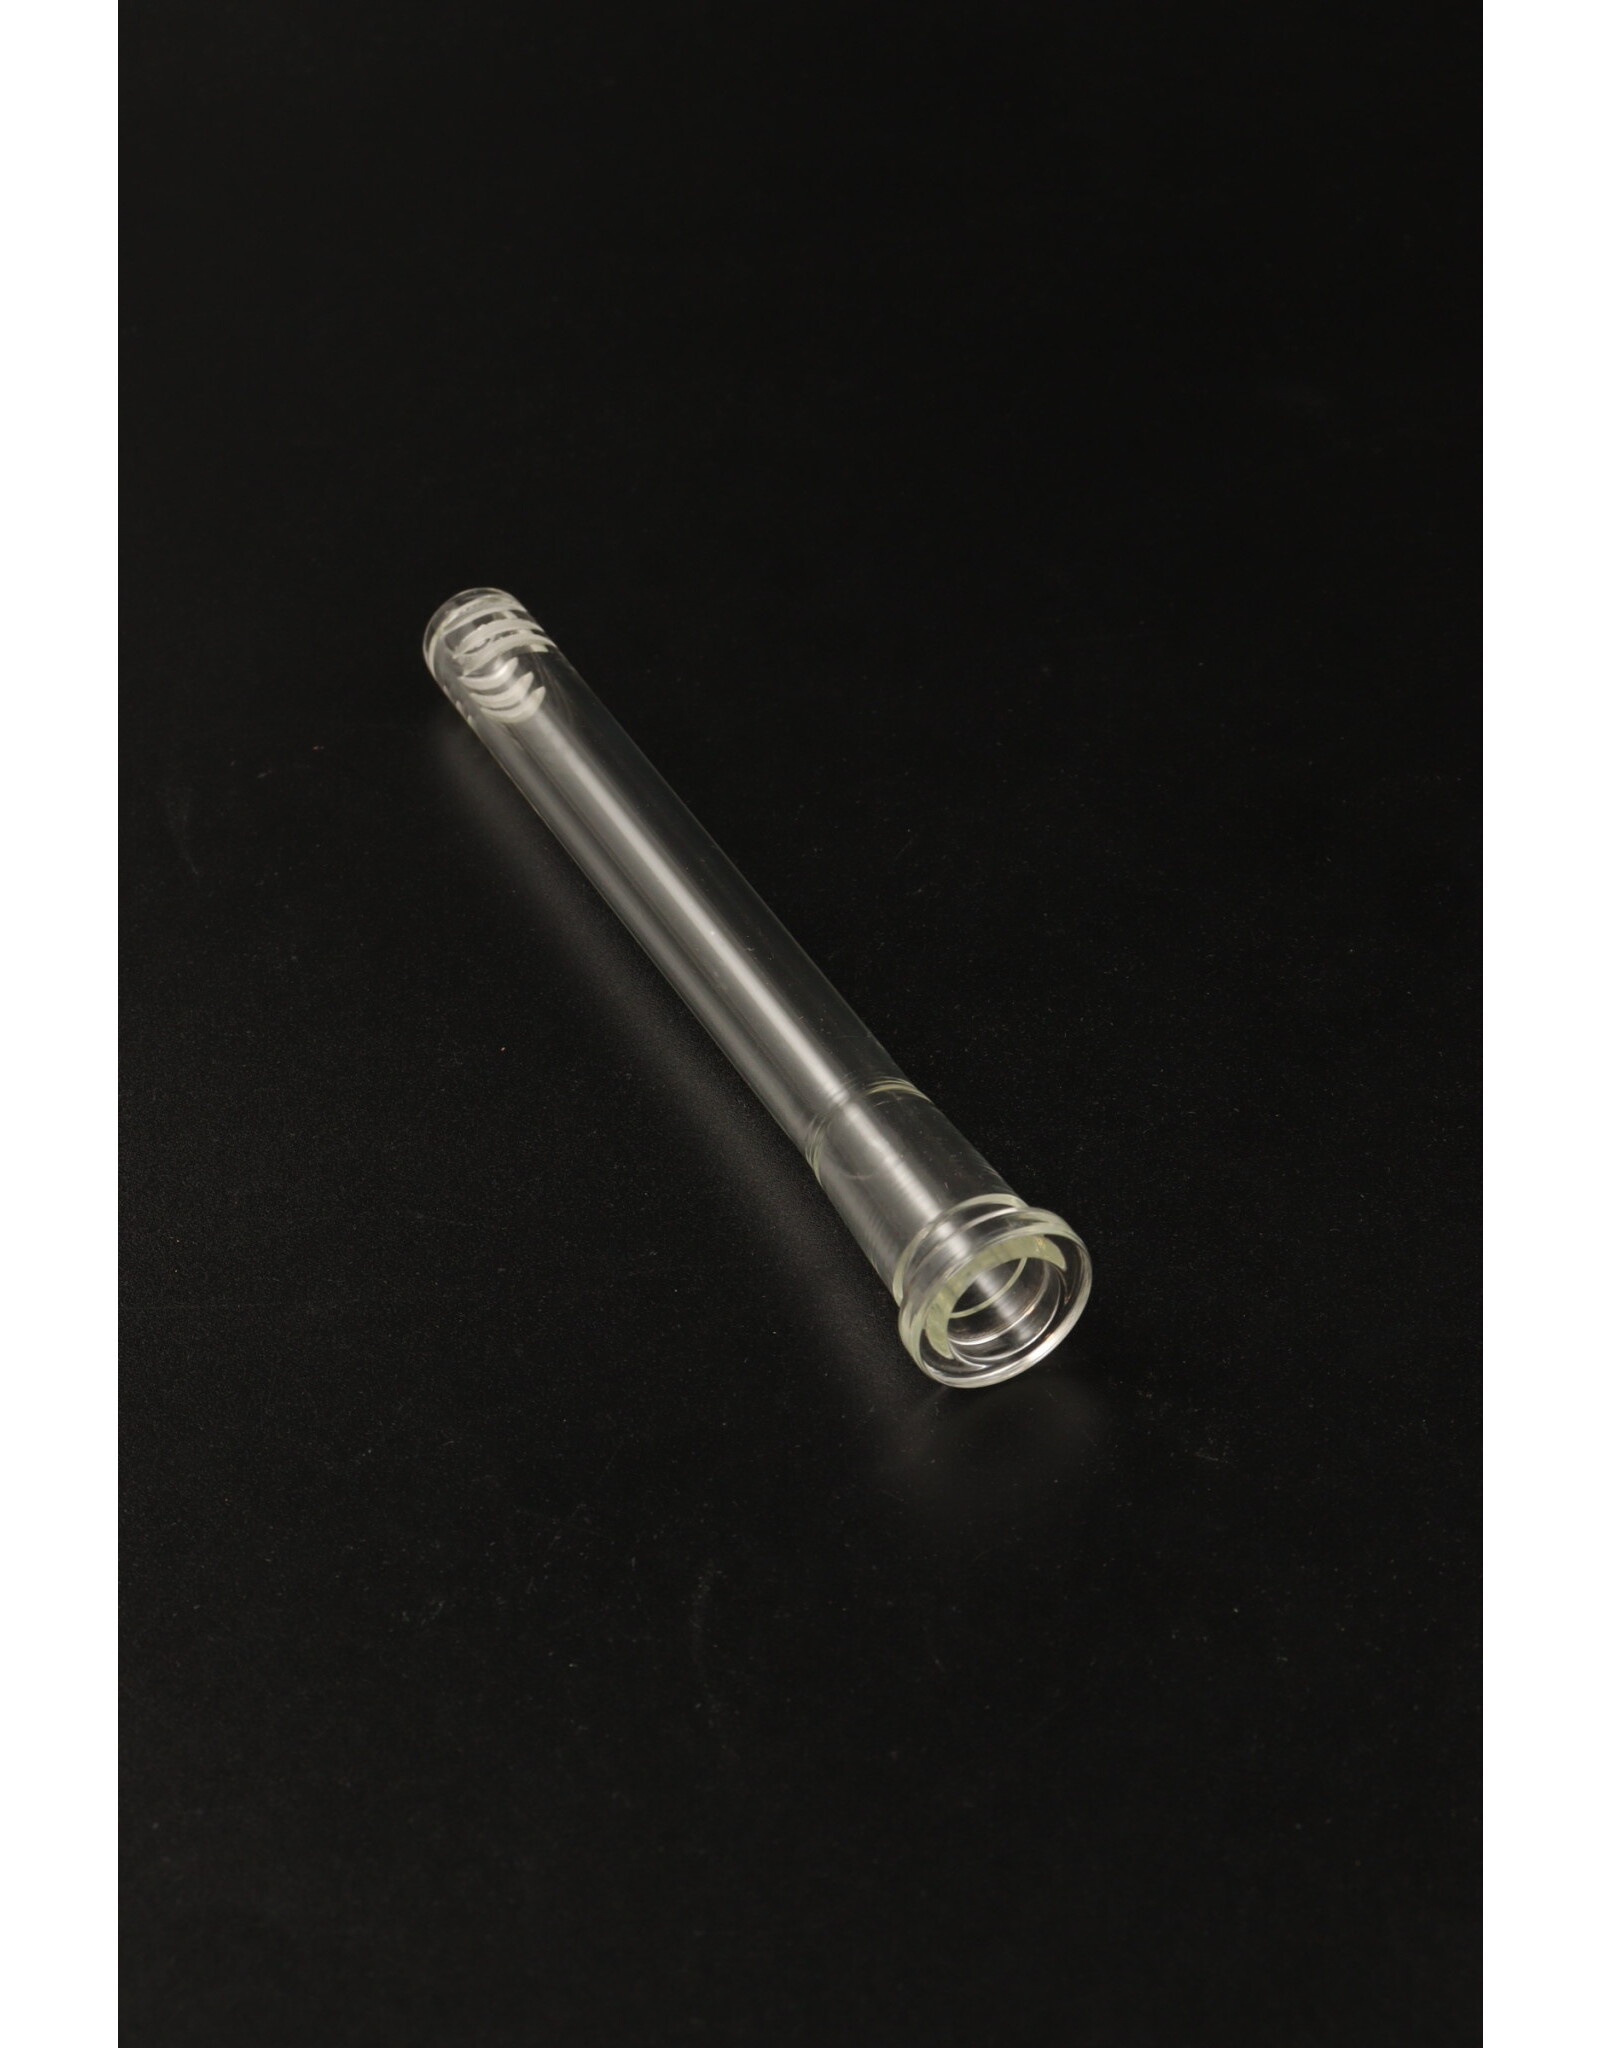 Hydros Glass 14mm Female GonG Hydros Downstem w/ Diffusion